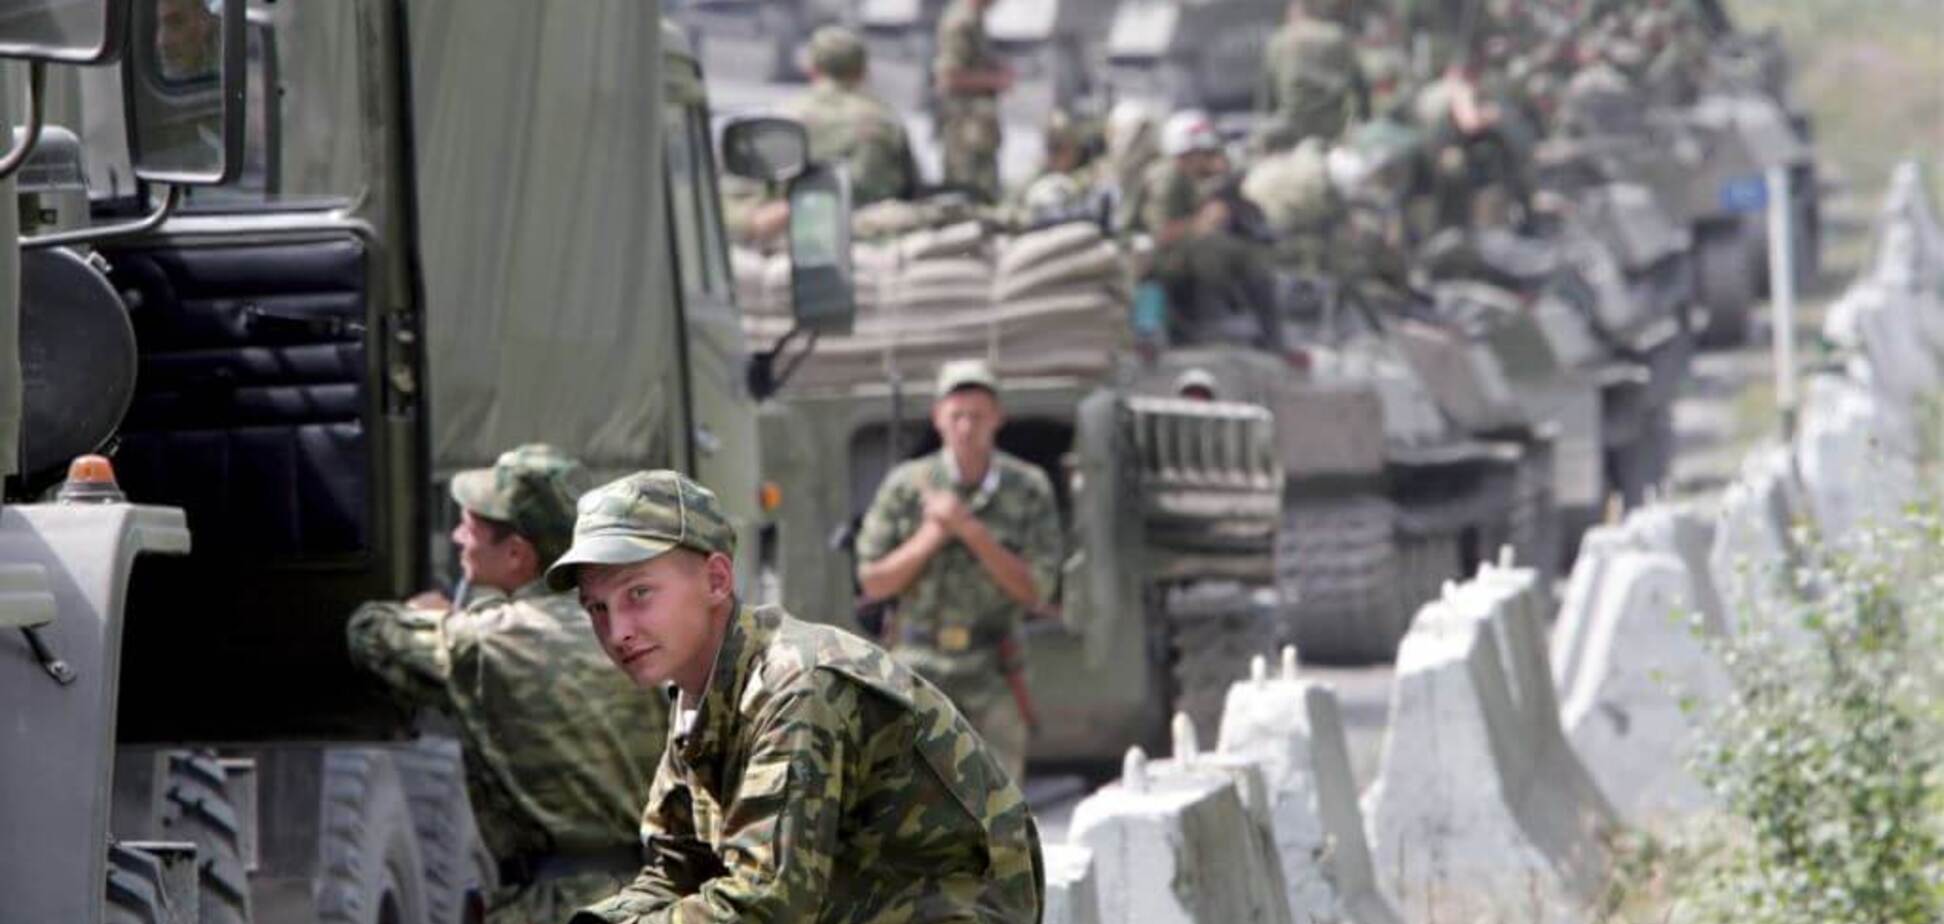 Волонтеры показали военных РФ, напавших на Грузию и Крым